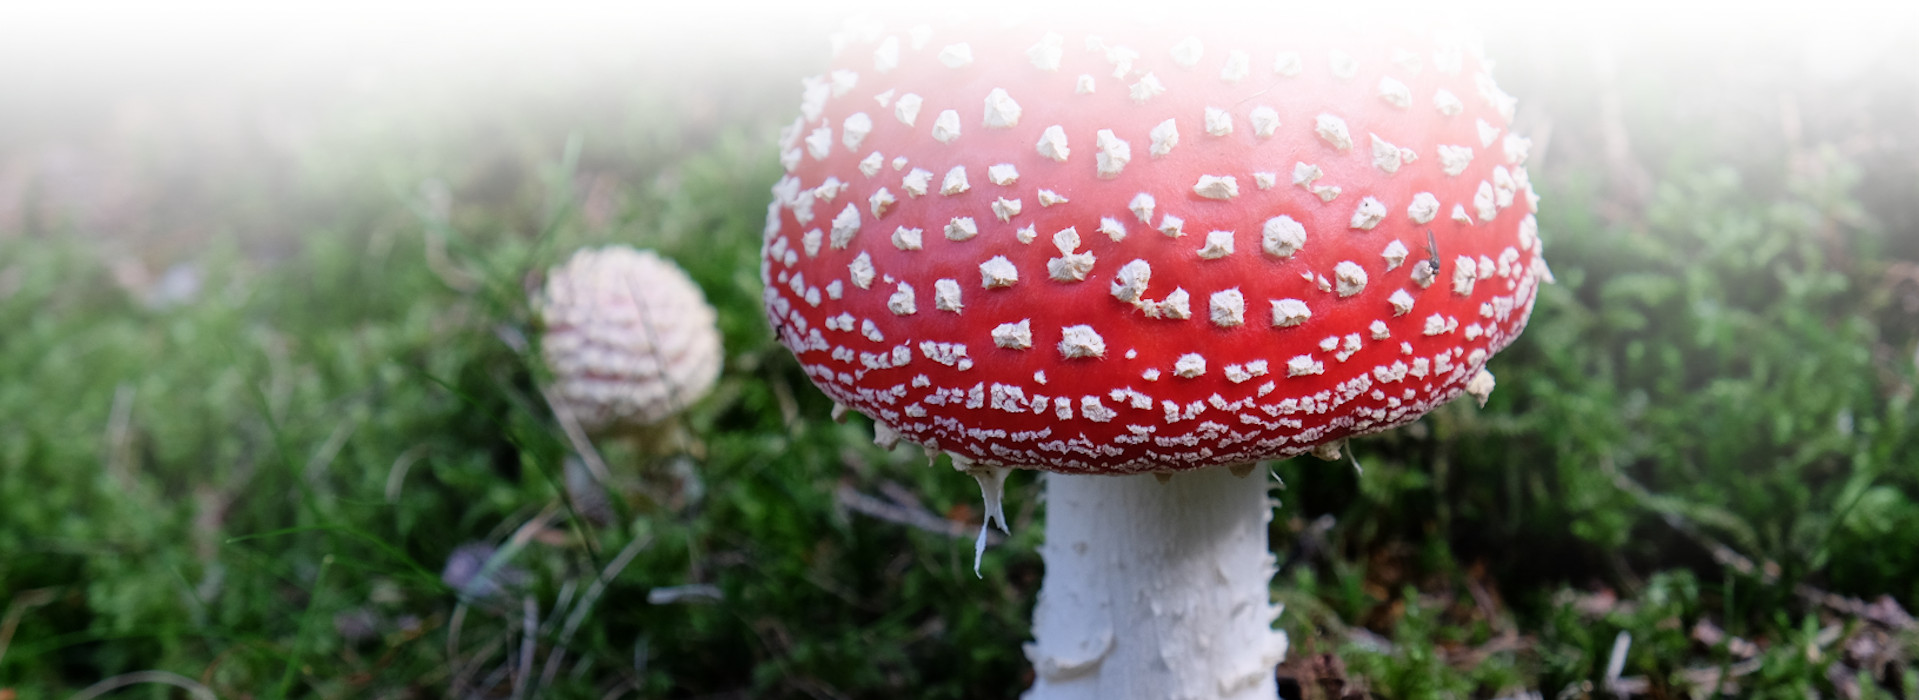 Ein roter Pilz mit weißen Punkten, im Hintergrund ist ein weißer Pilz zu sehen. Foto: Walter Finkbeiner